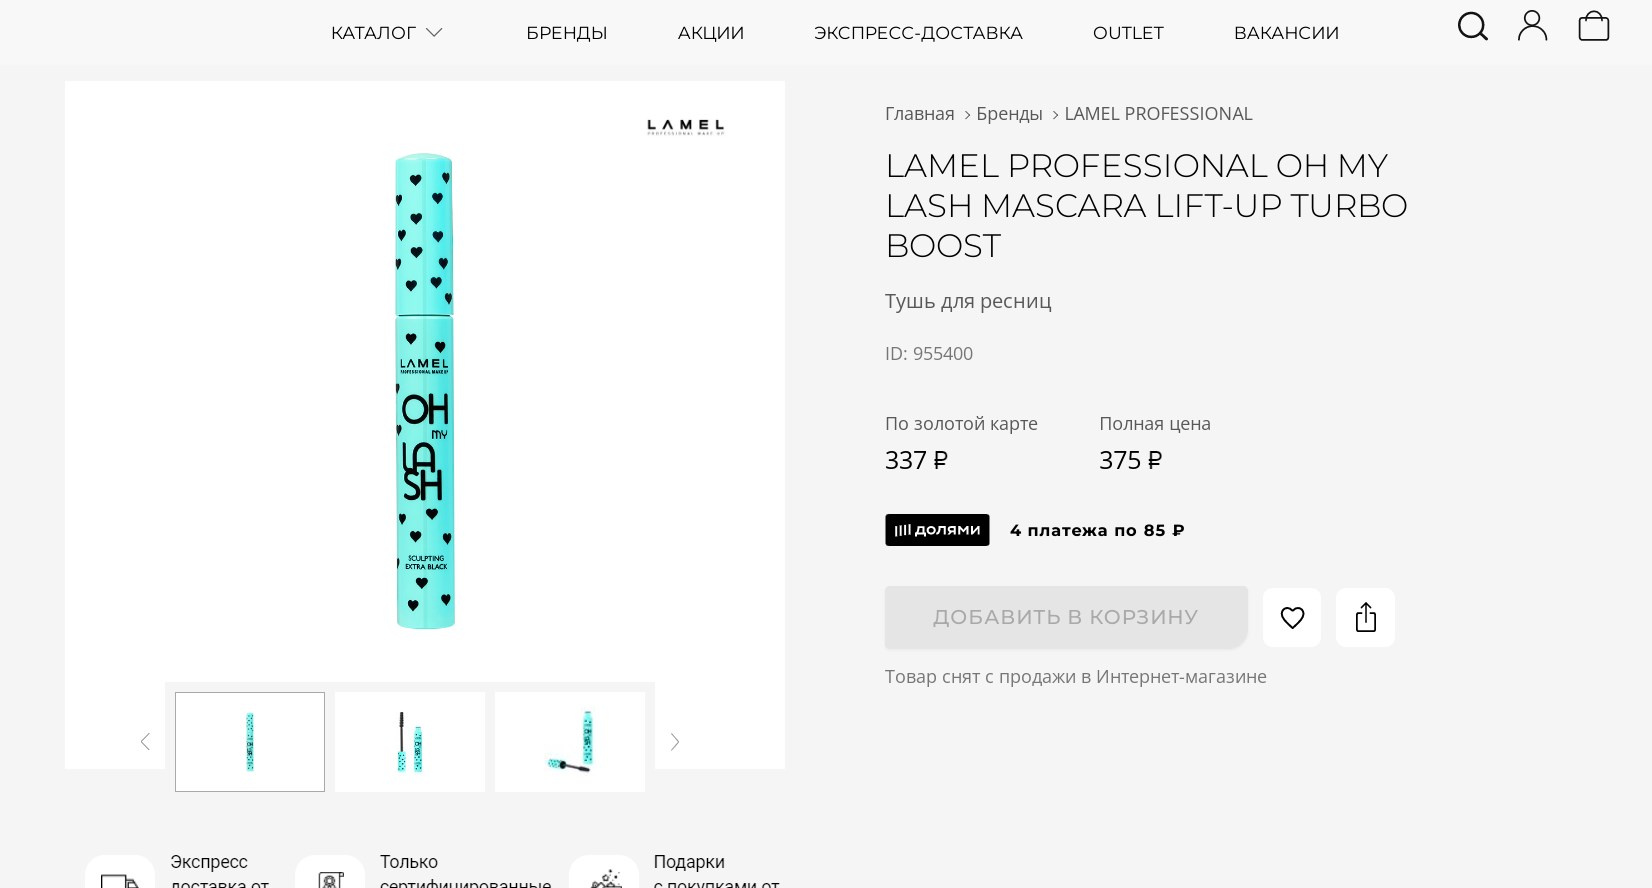 У бренда Lamel широкий ассортимент косметики и бюджетная цена